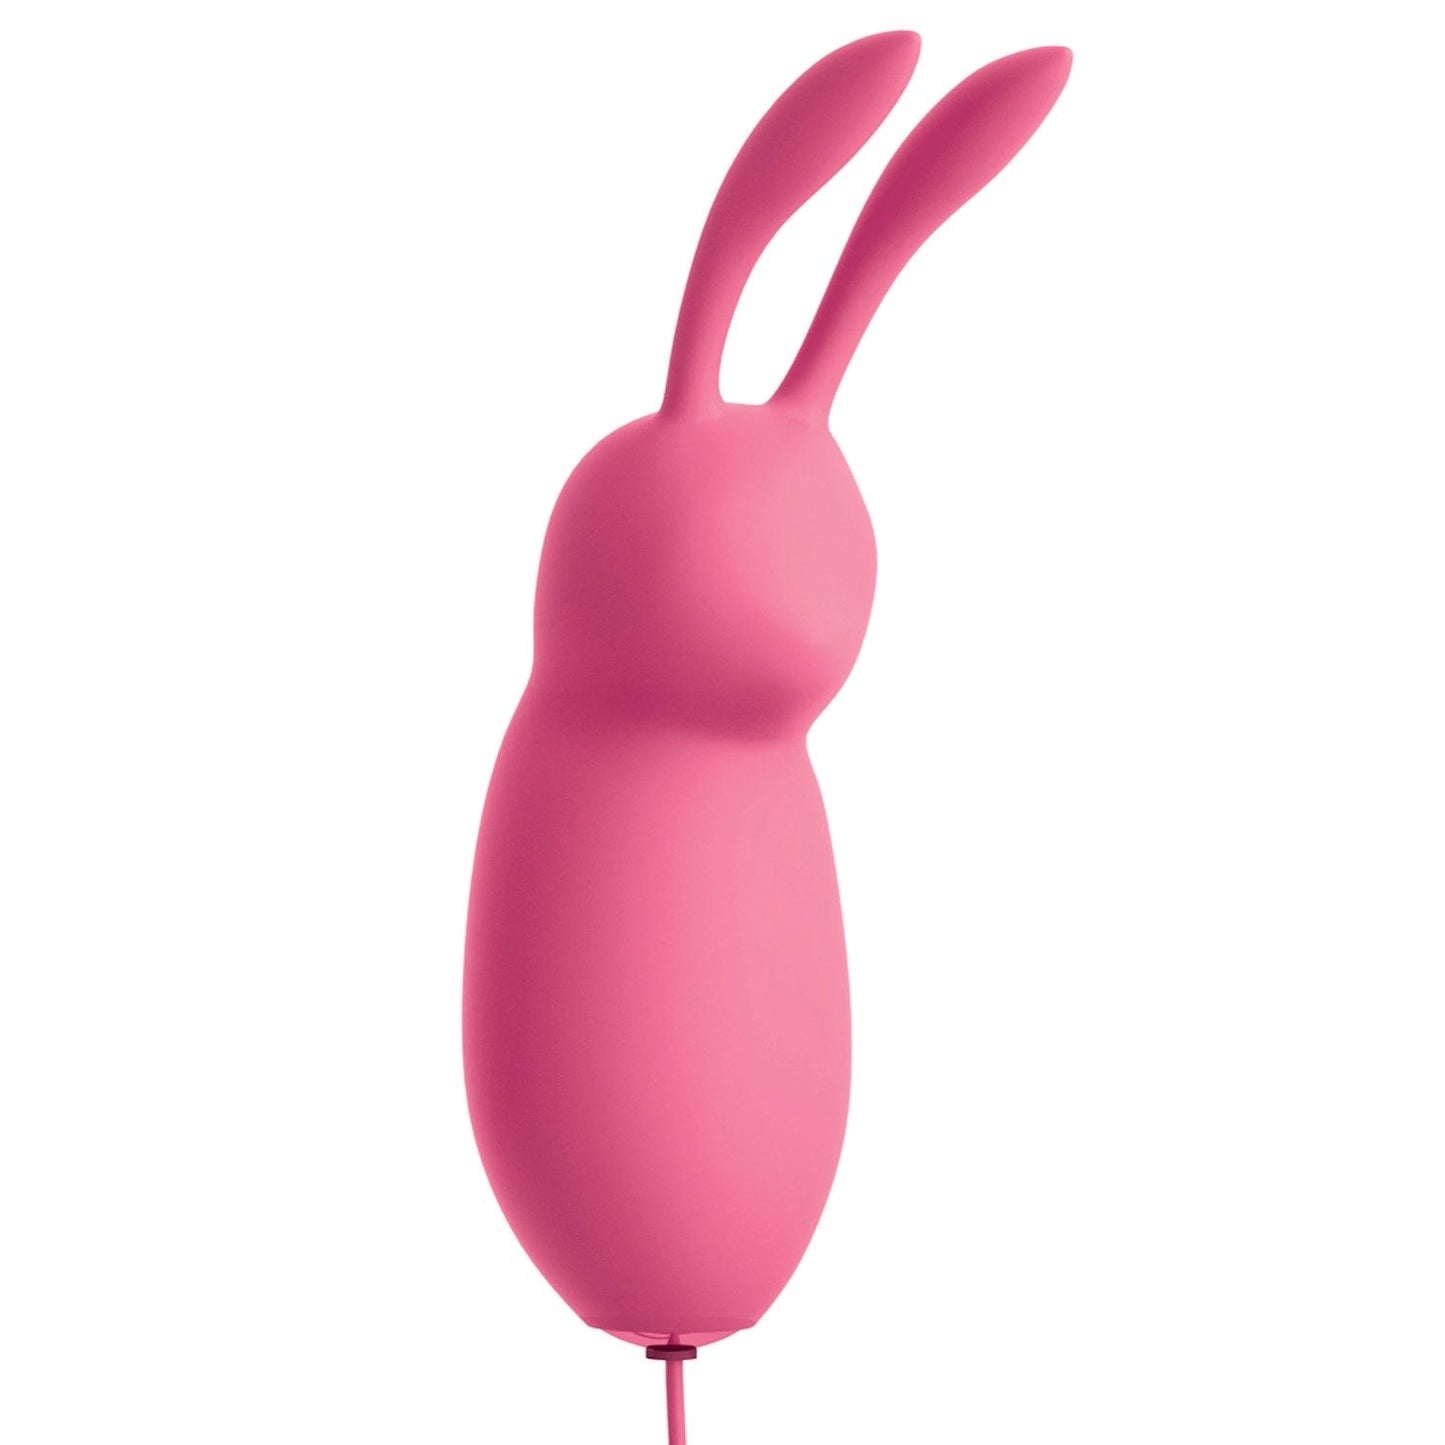 हे भगवान! बुलेट्स #प्यारा - गुलाबी यूएसबी संचालित खरगोश बुलेट